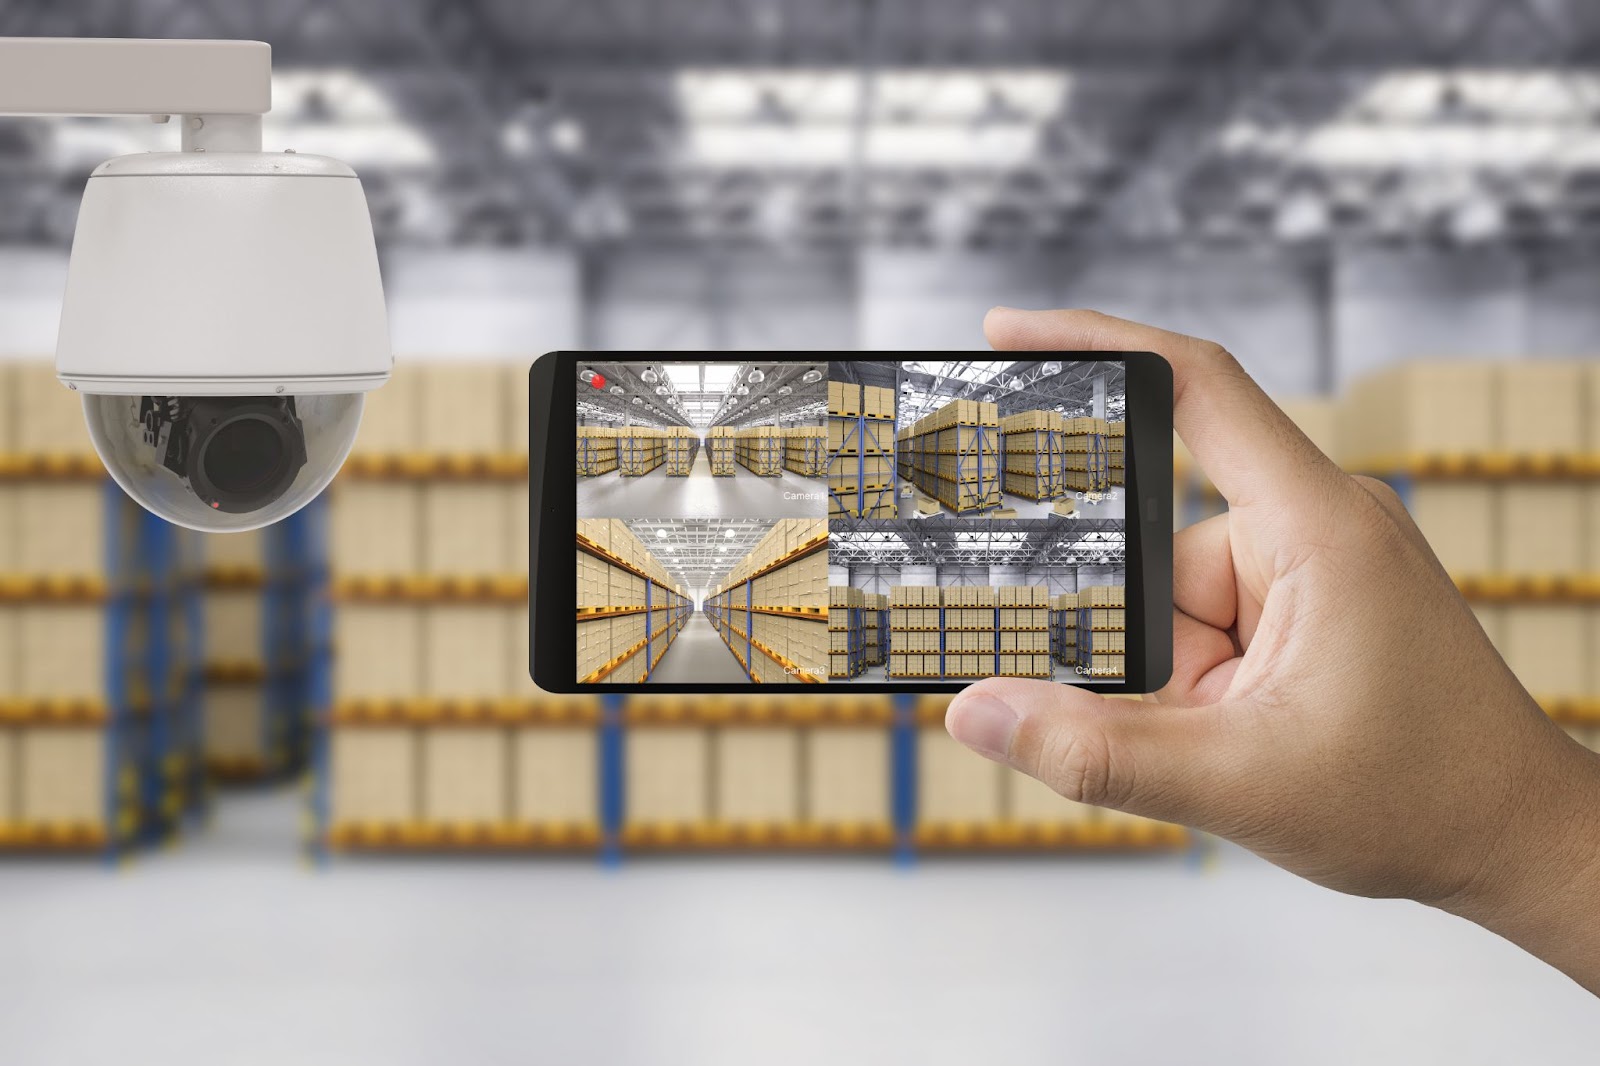 Main tenant un smartphone avec une caméra de sécurité en direct des rayonnages d'un entrepôt, mettant en évidence la technologie de surveillance.